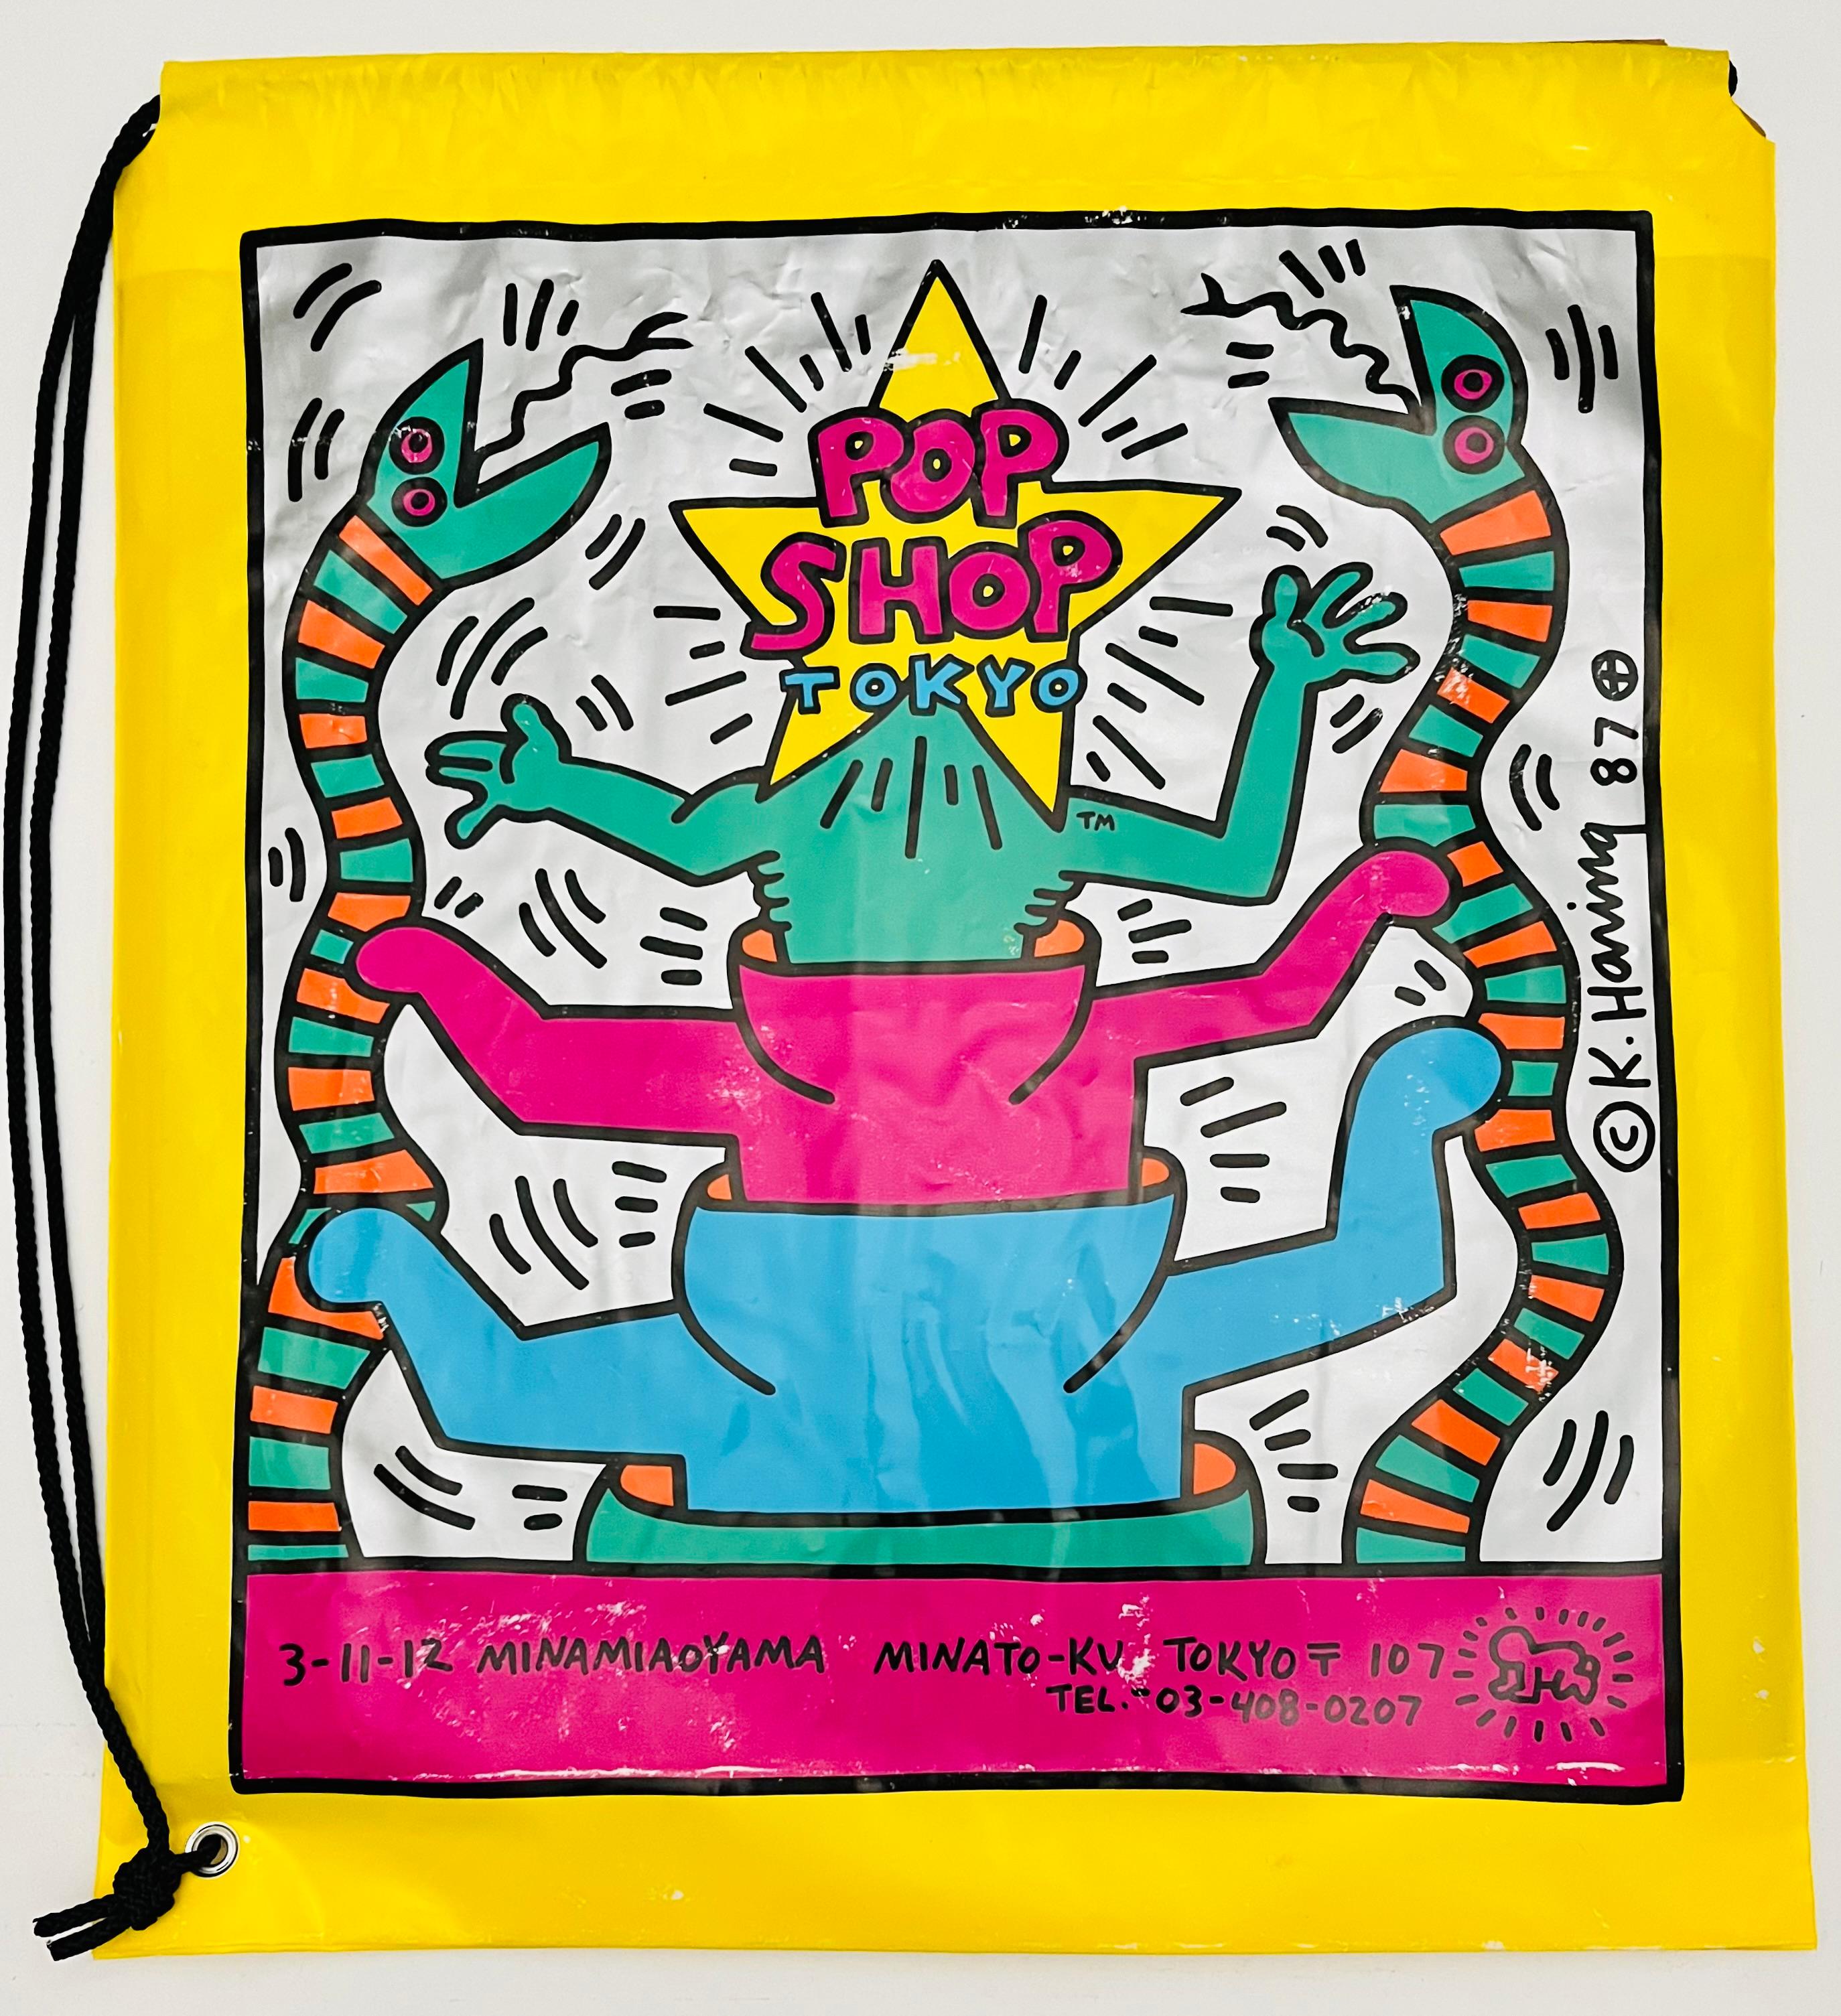 Keith Haring Pop Shop Tokio 1988:
Seltene originale 1980er Keith Haring Pop Shop Tokyo Tasche, entworfen und illustriert vom Künstler. Mit einem auffälligen Keith-Haring-Schriftzug und den Original-Logos des Haring-Popshops in Tokio sowie